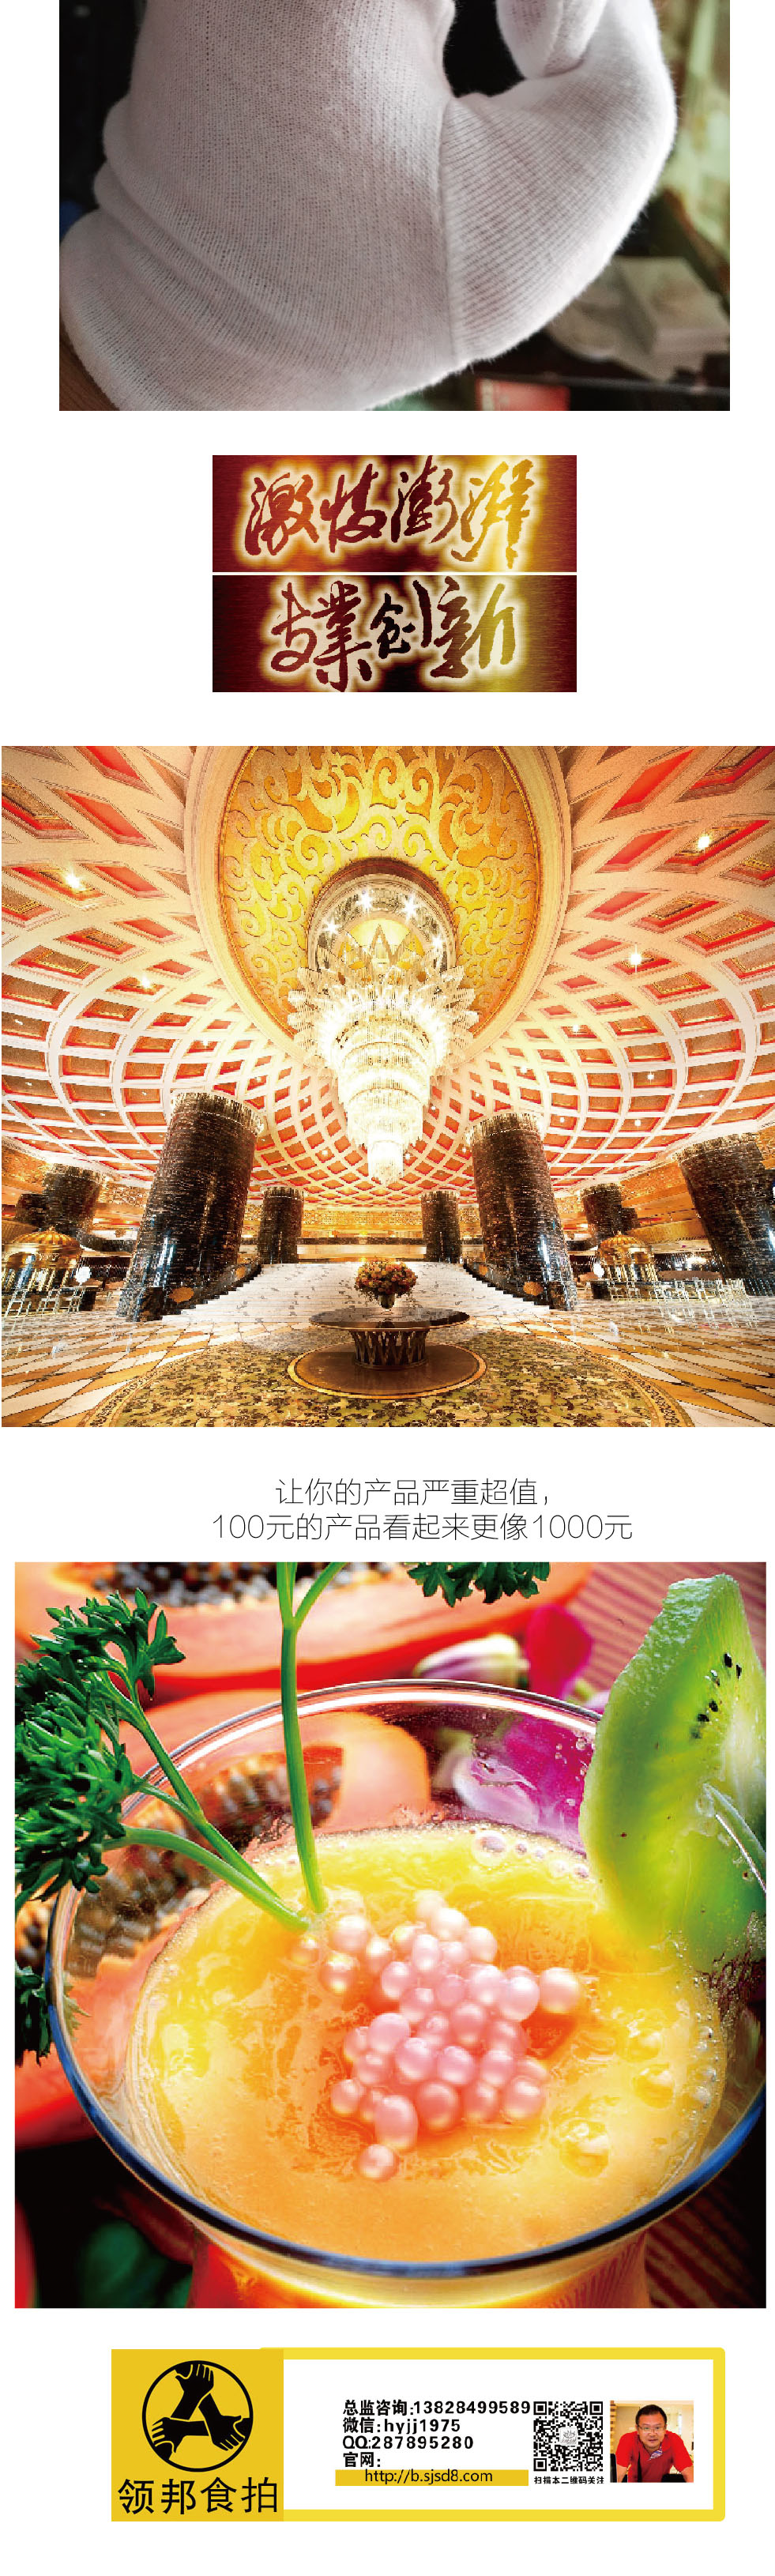    专业餐厅餐牌摄影  广州餐厅餐牌摄影 广州菜谱拍摄 广州菜式摄影